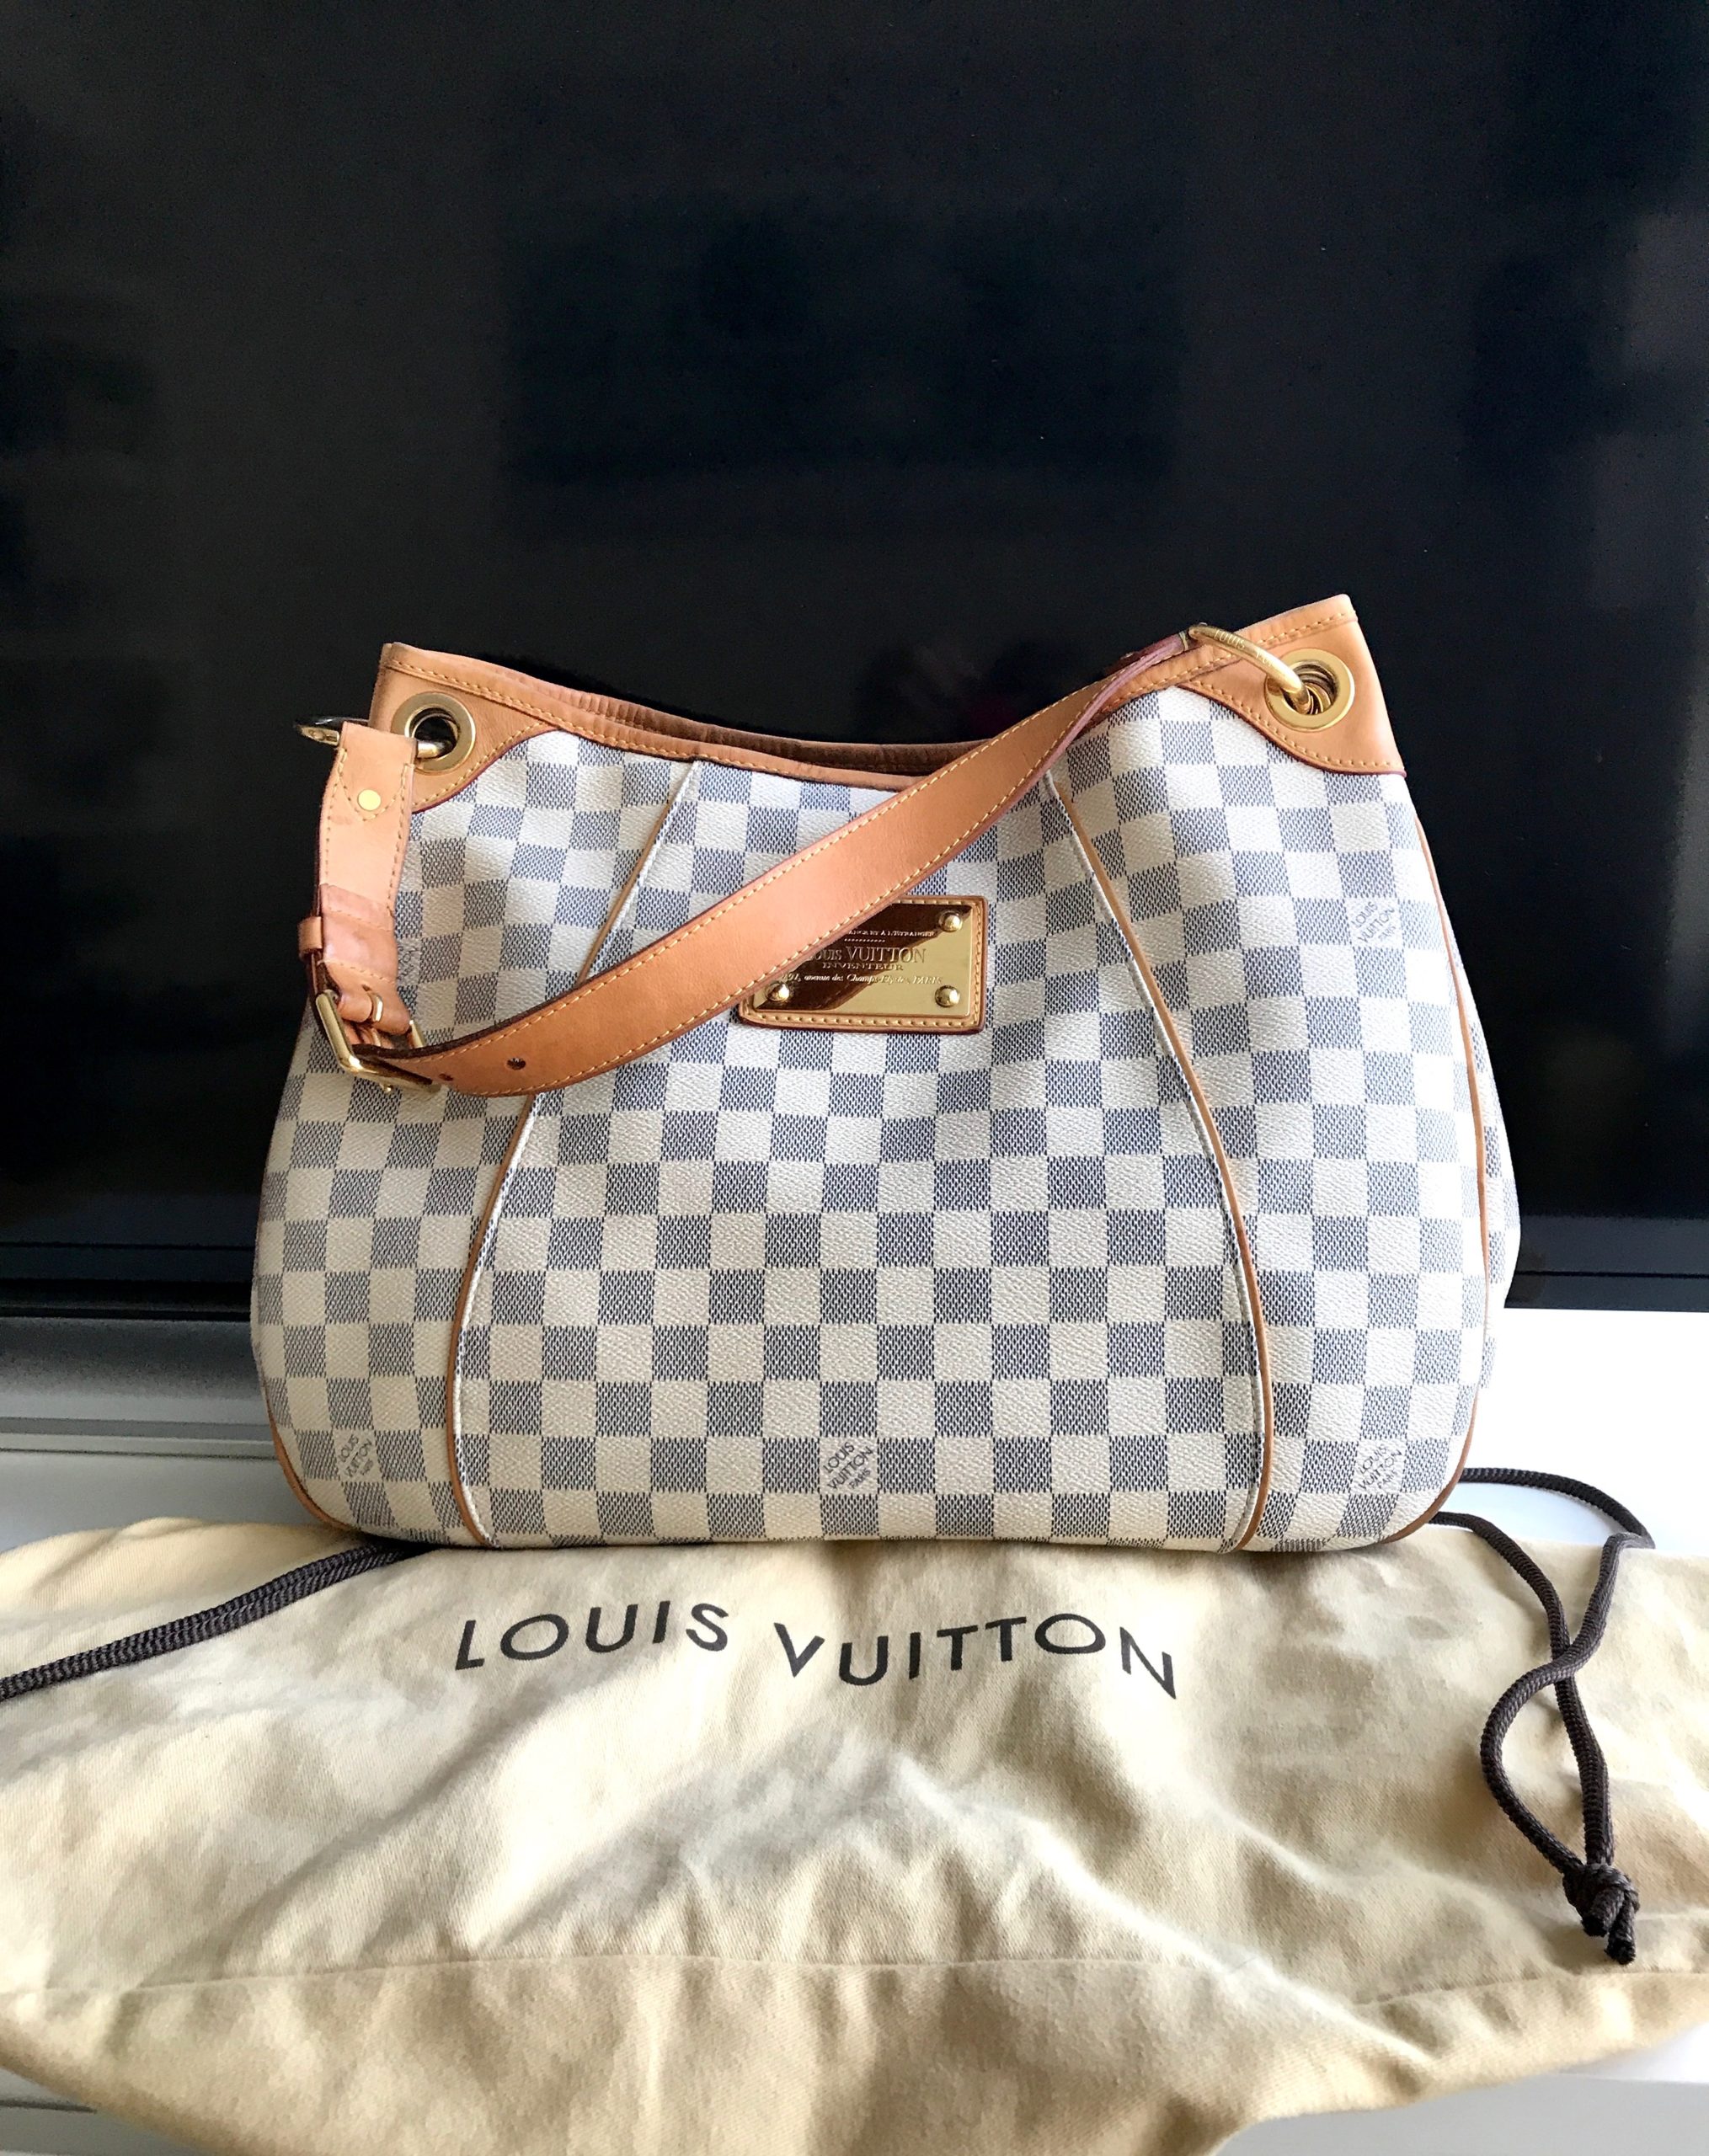 Auth Louis Vuitton Damier Azur Galliera PM Shoulder Bag N55215